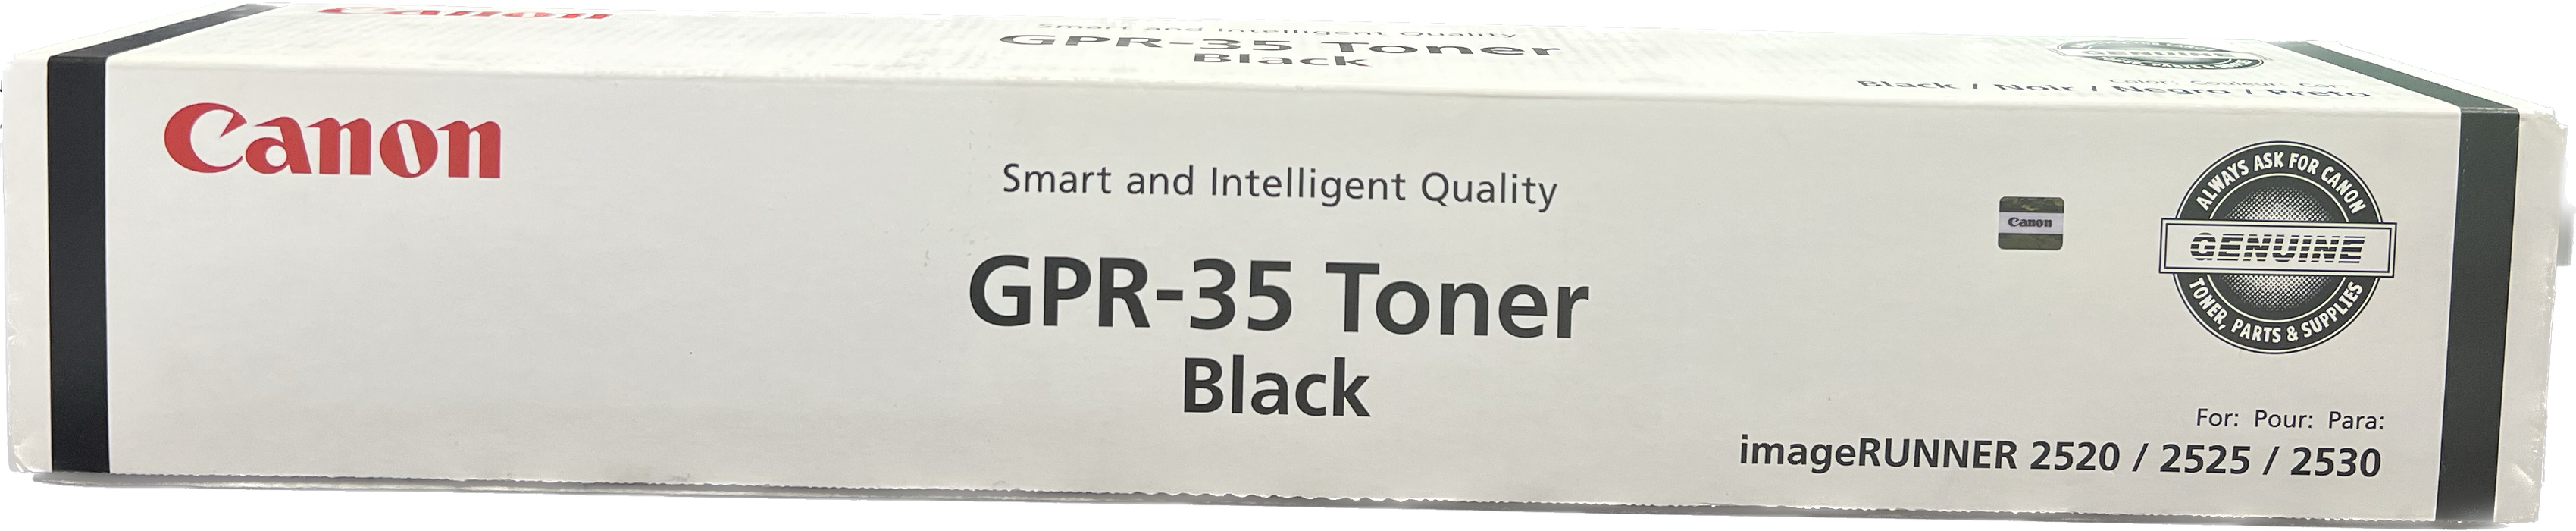 Genuine Canon Black Toner Cartridge | 2785B003 | GPR-35K